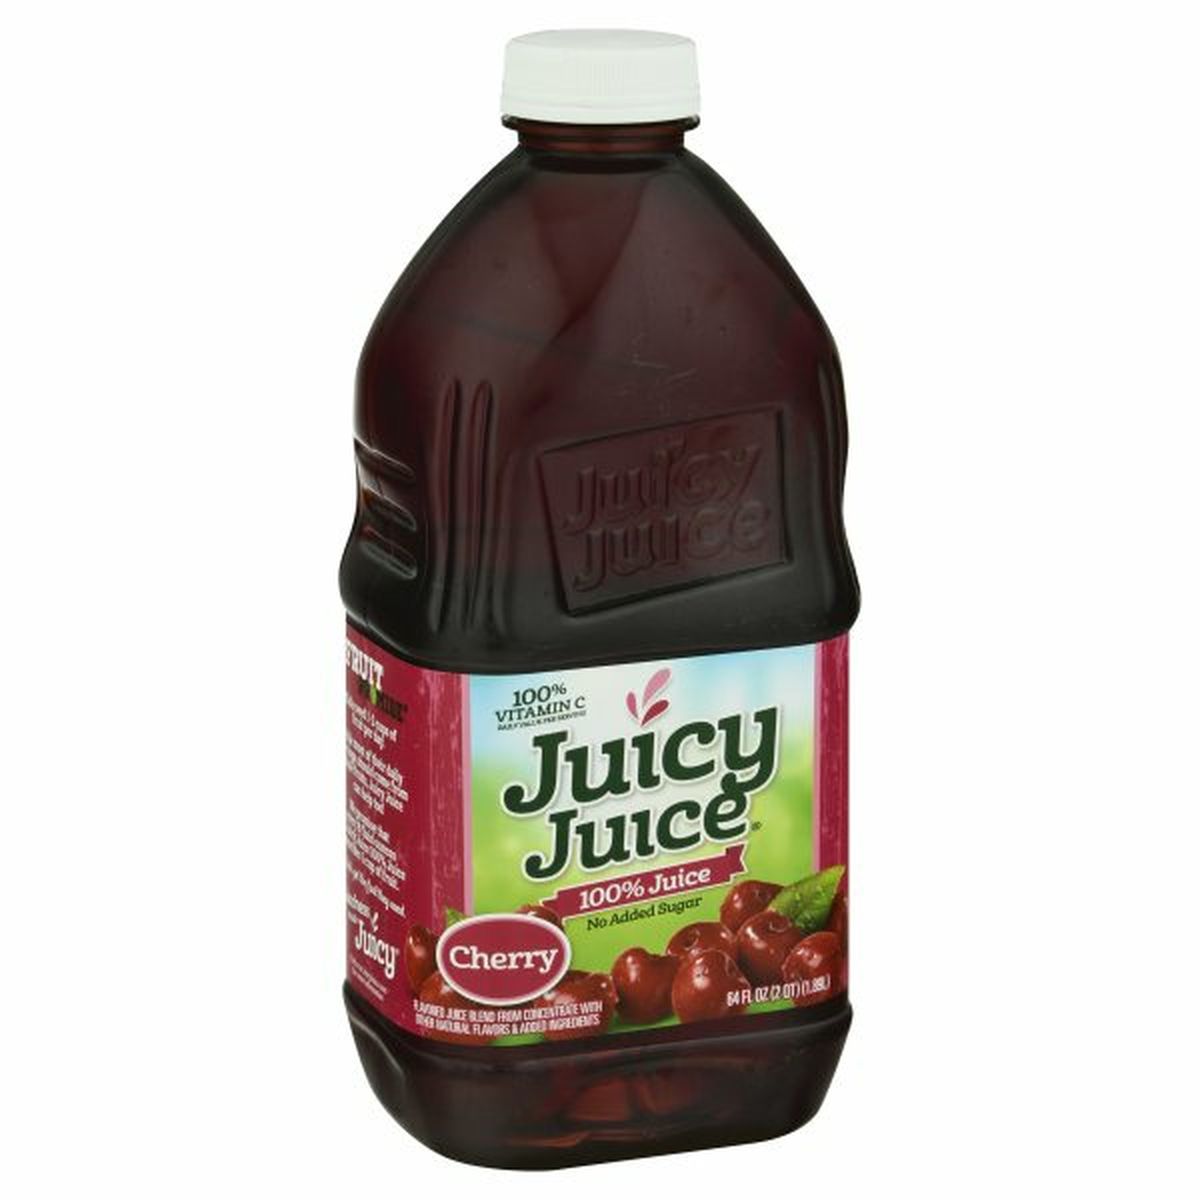 Calories in Juicy Juice 100% Juice, Cherry